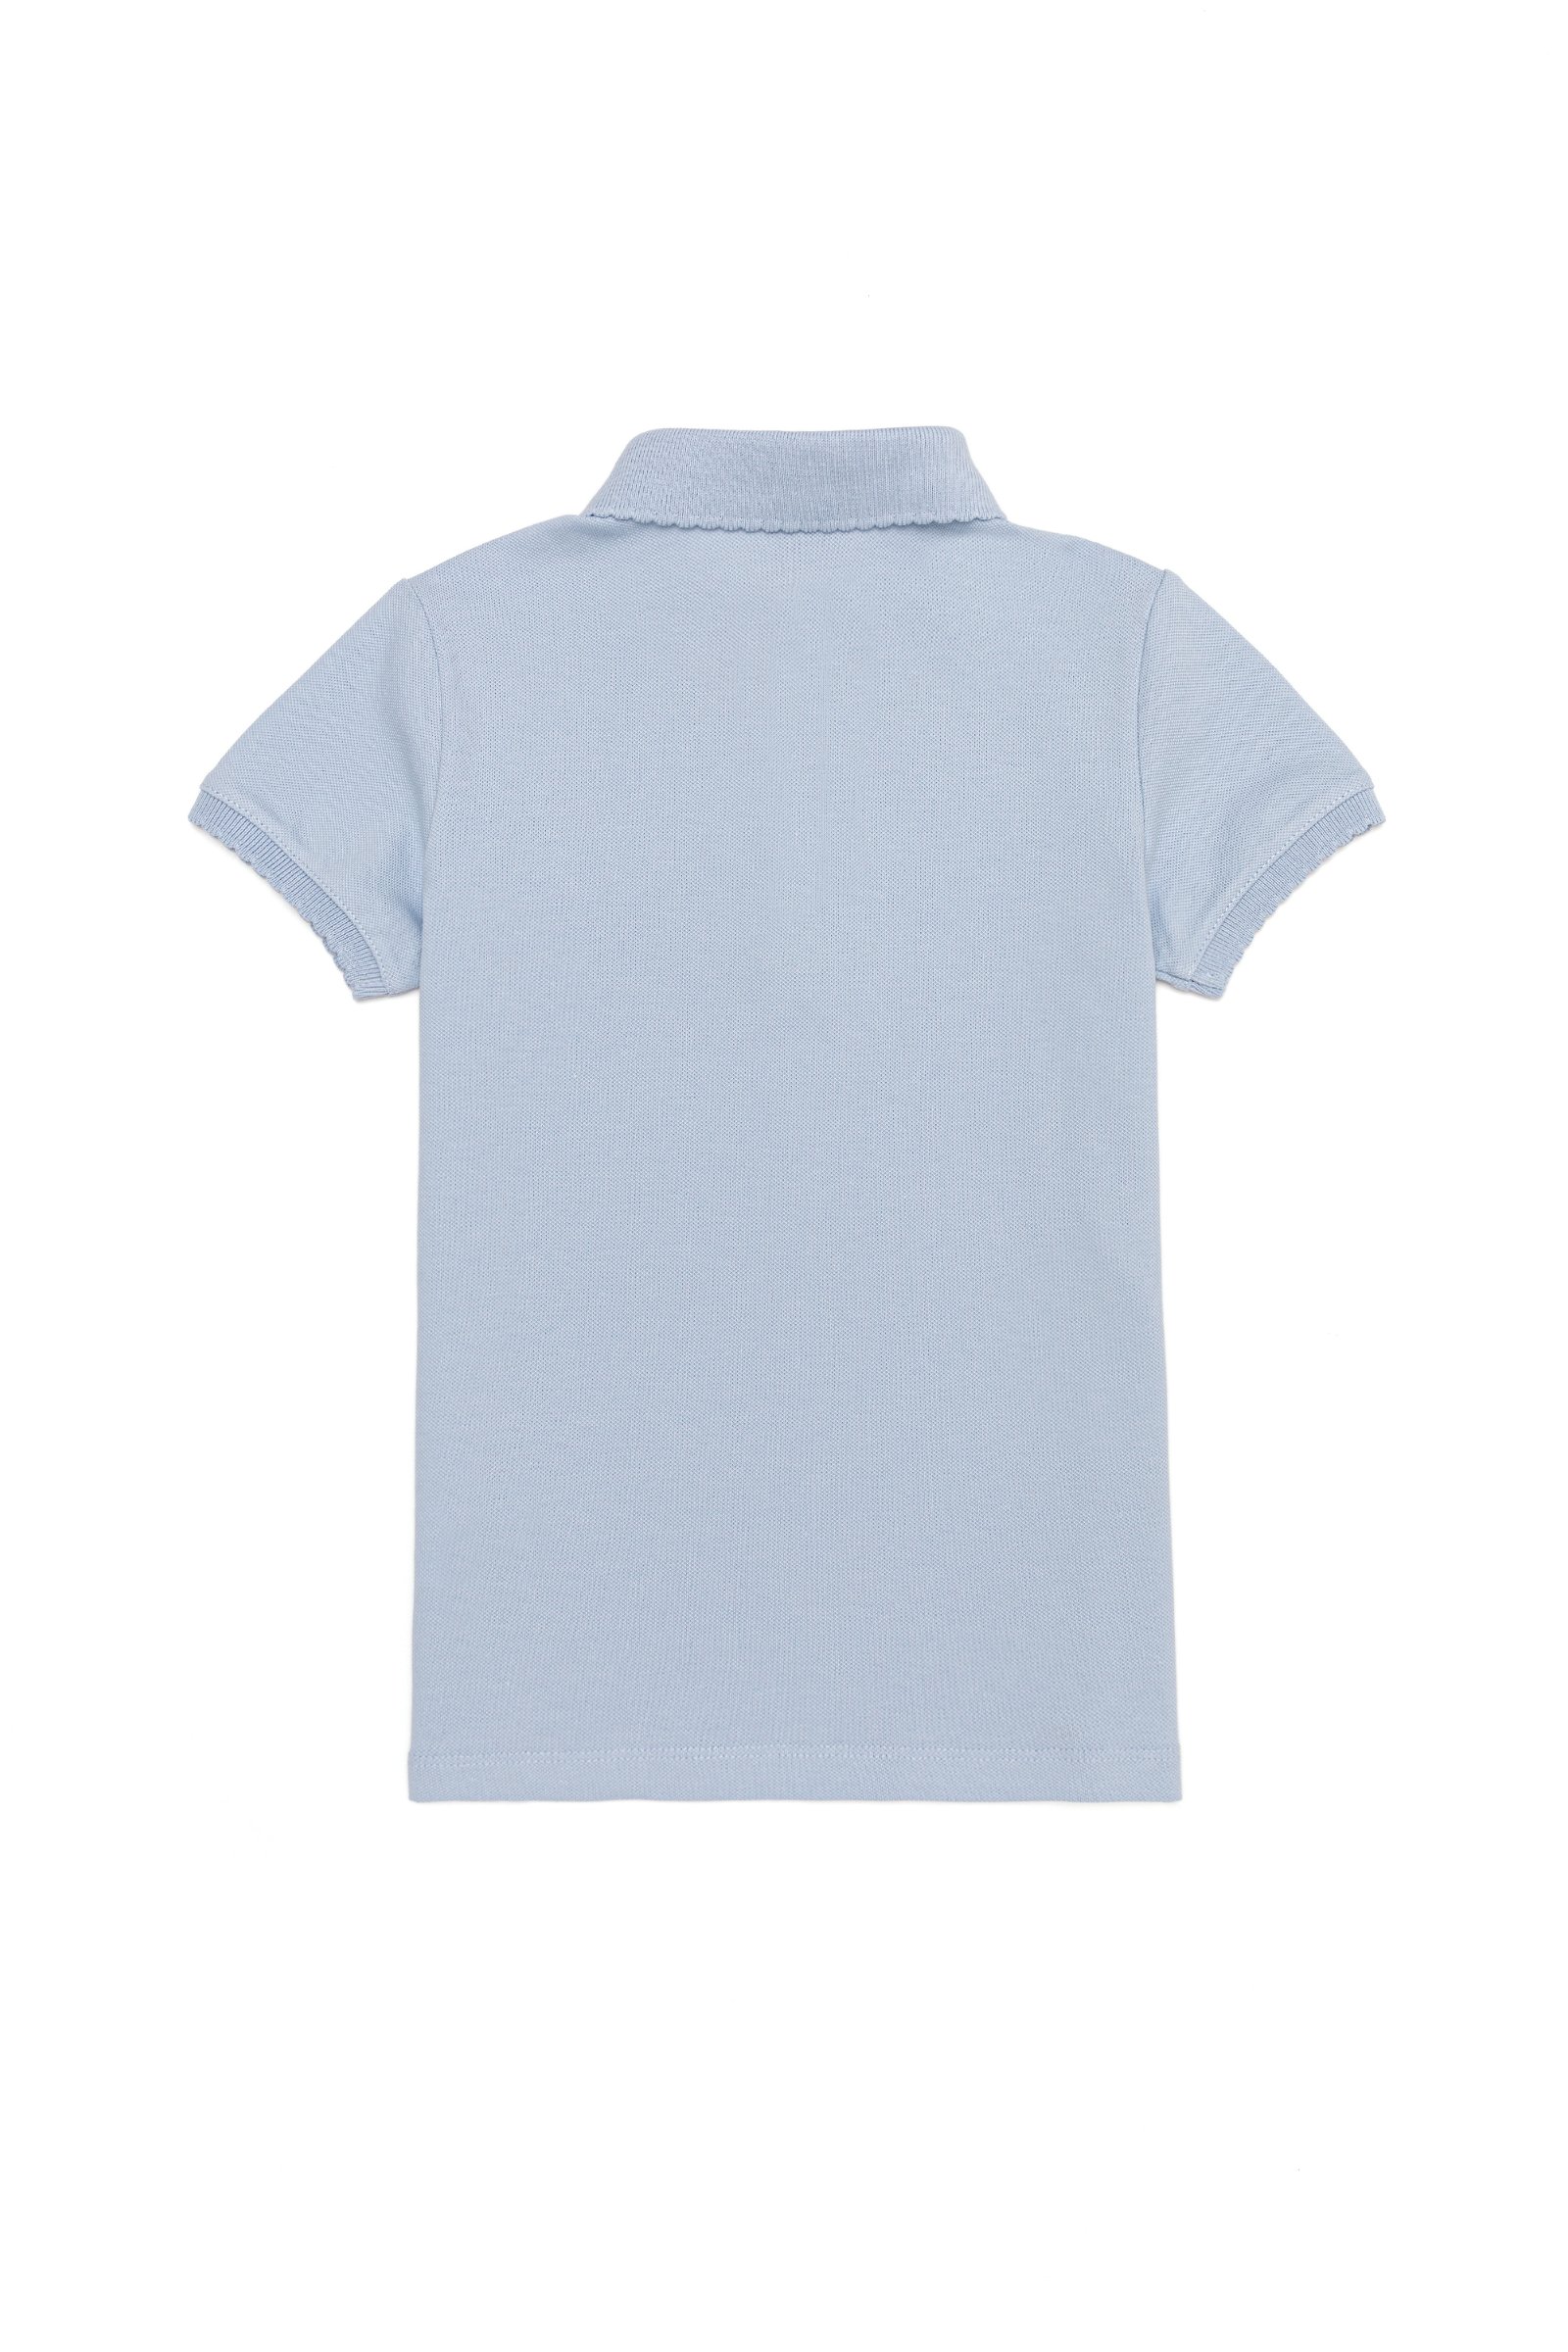 تی شرت یقه پولو سورمه ای روشن  استاندارد فیت  دخترانه یو اس پولو